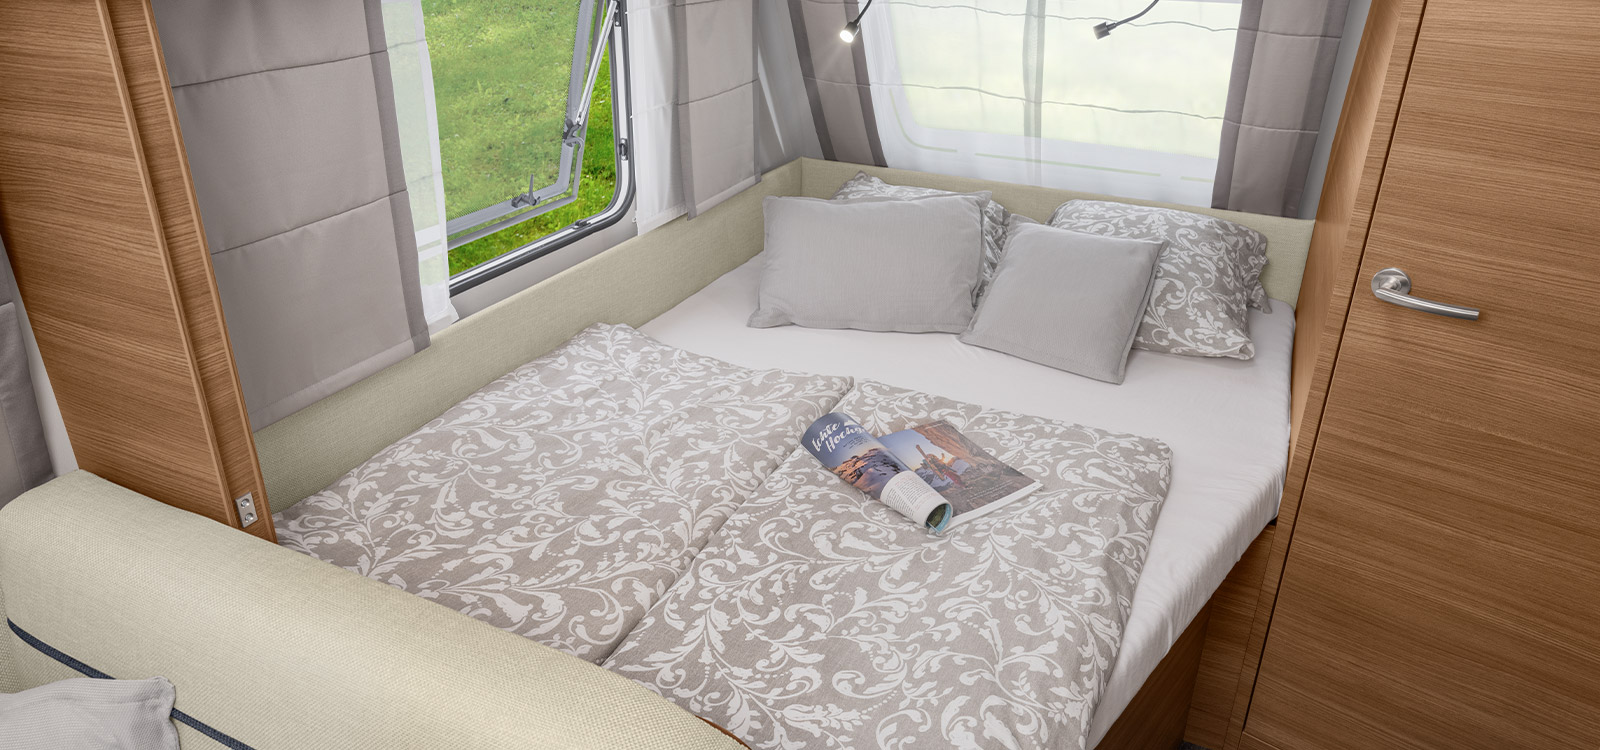 Französisches Bett in den Wohnwagen von KNAUS